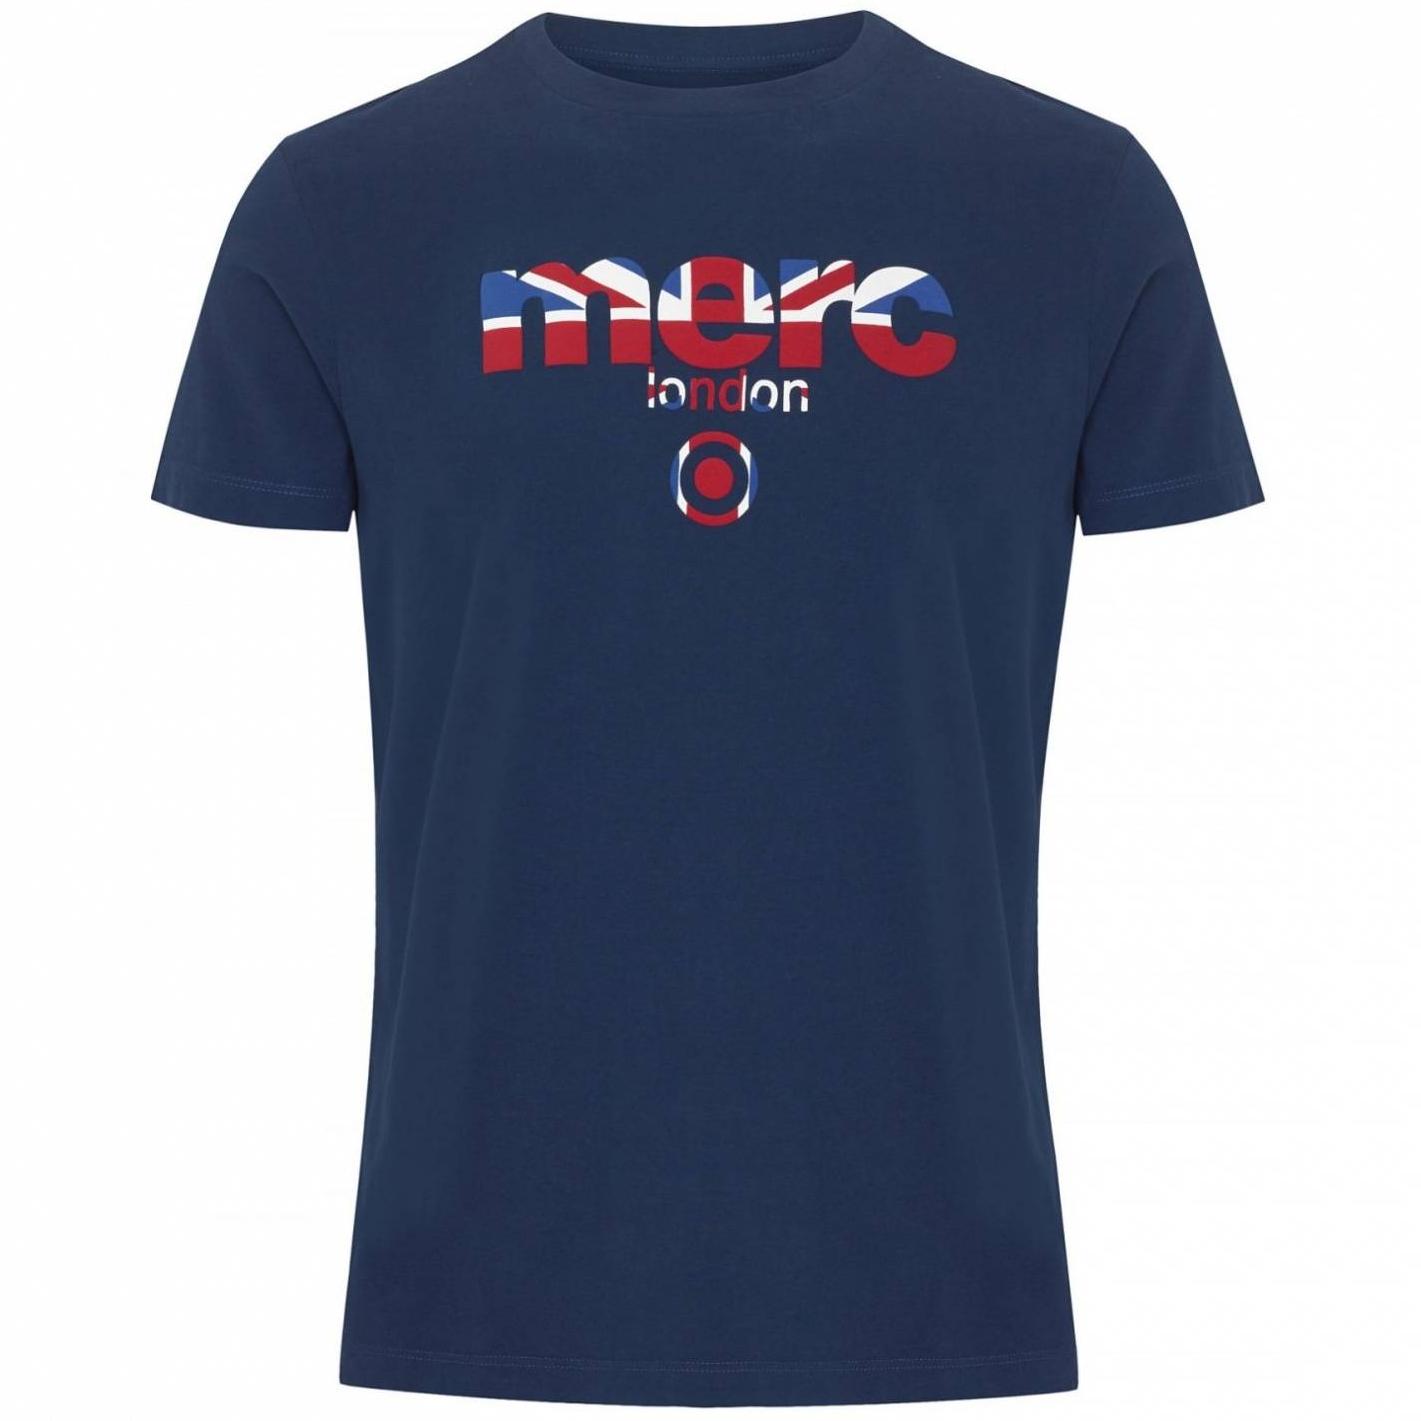 Мужская футболка Merc Broadwell темно синяя с классическим логотипом Merc, купить на официальном сайте 